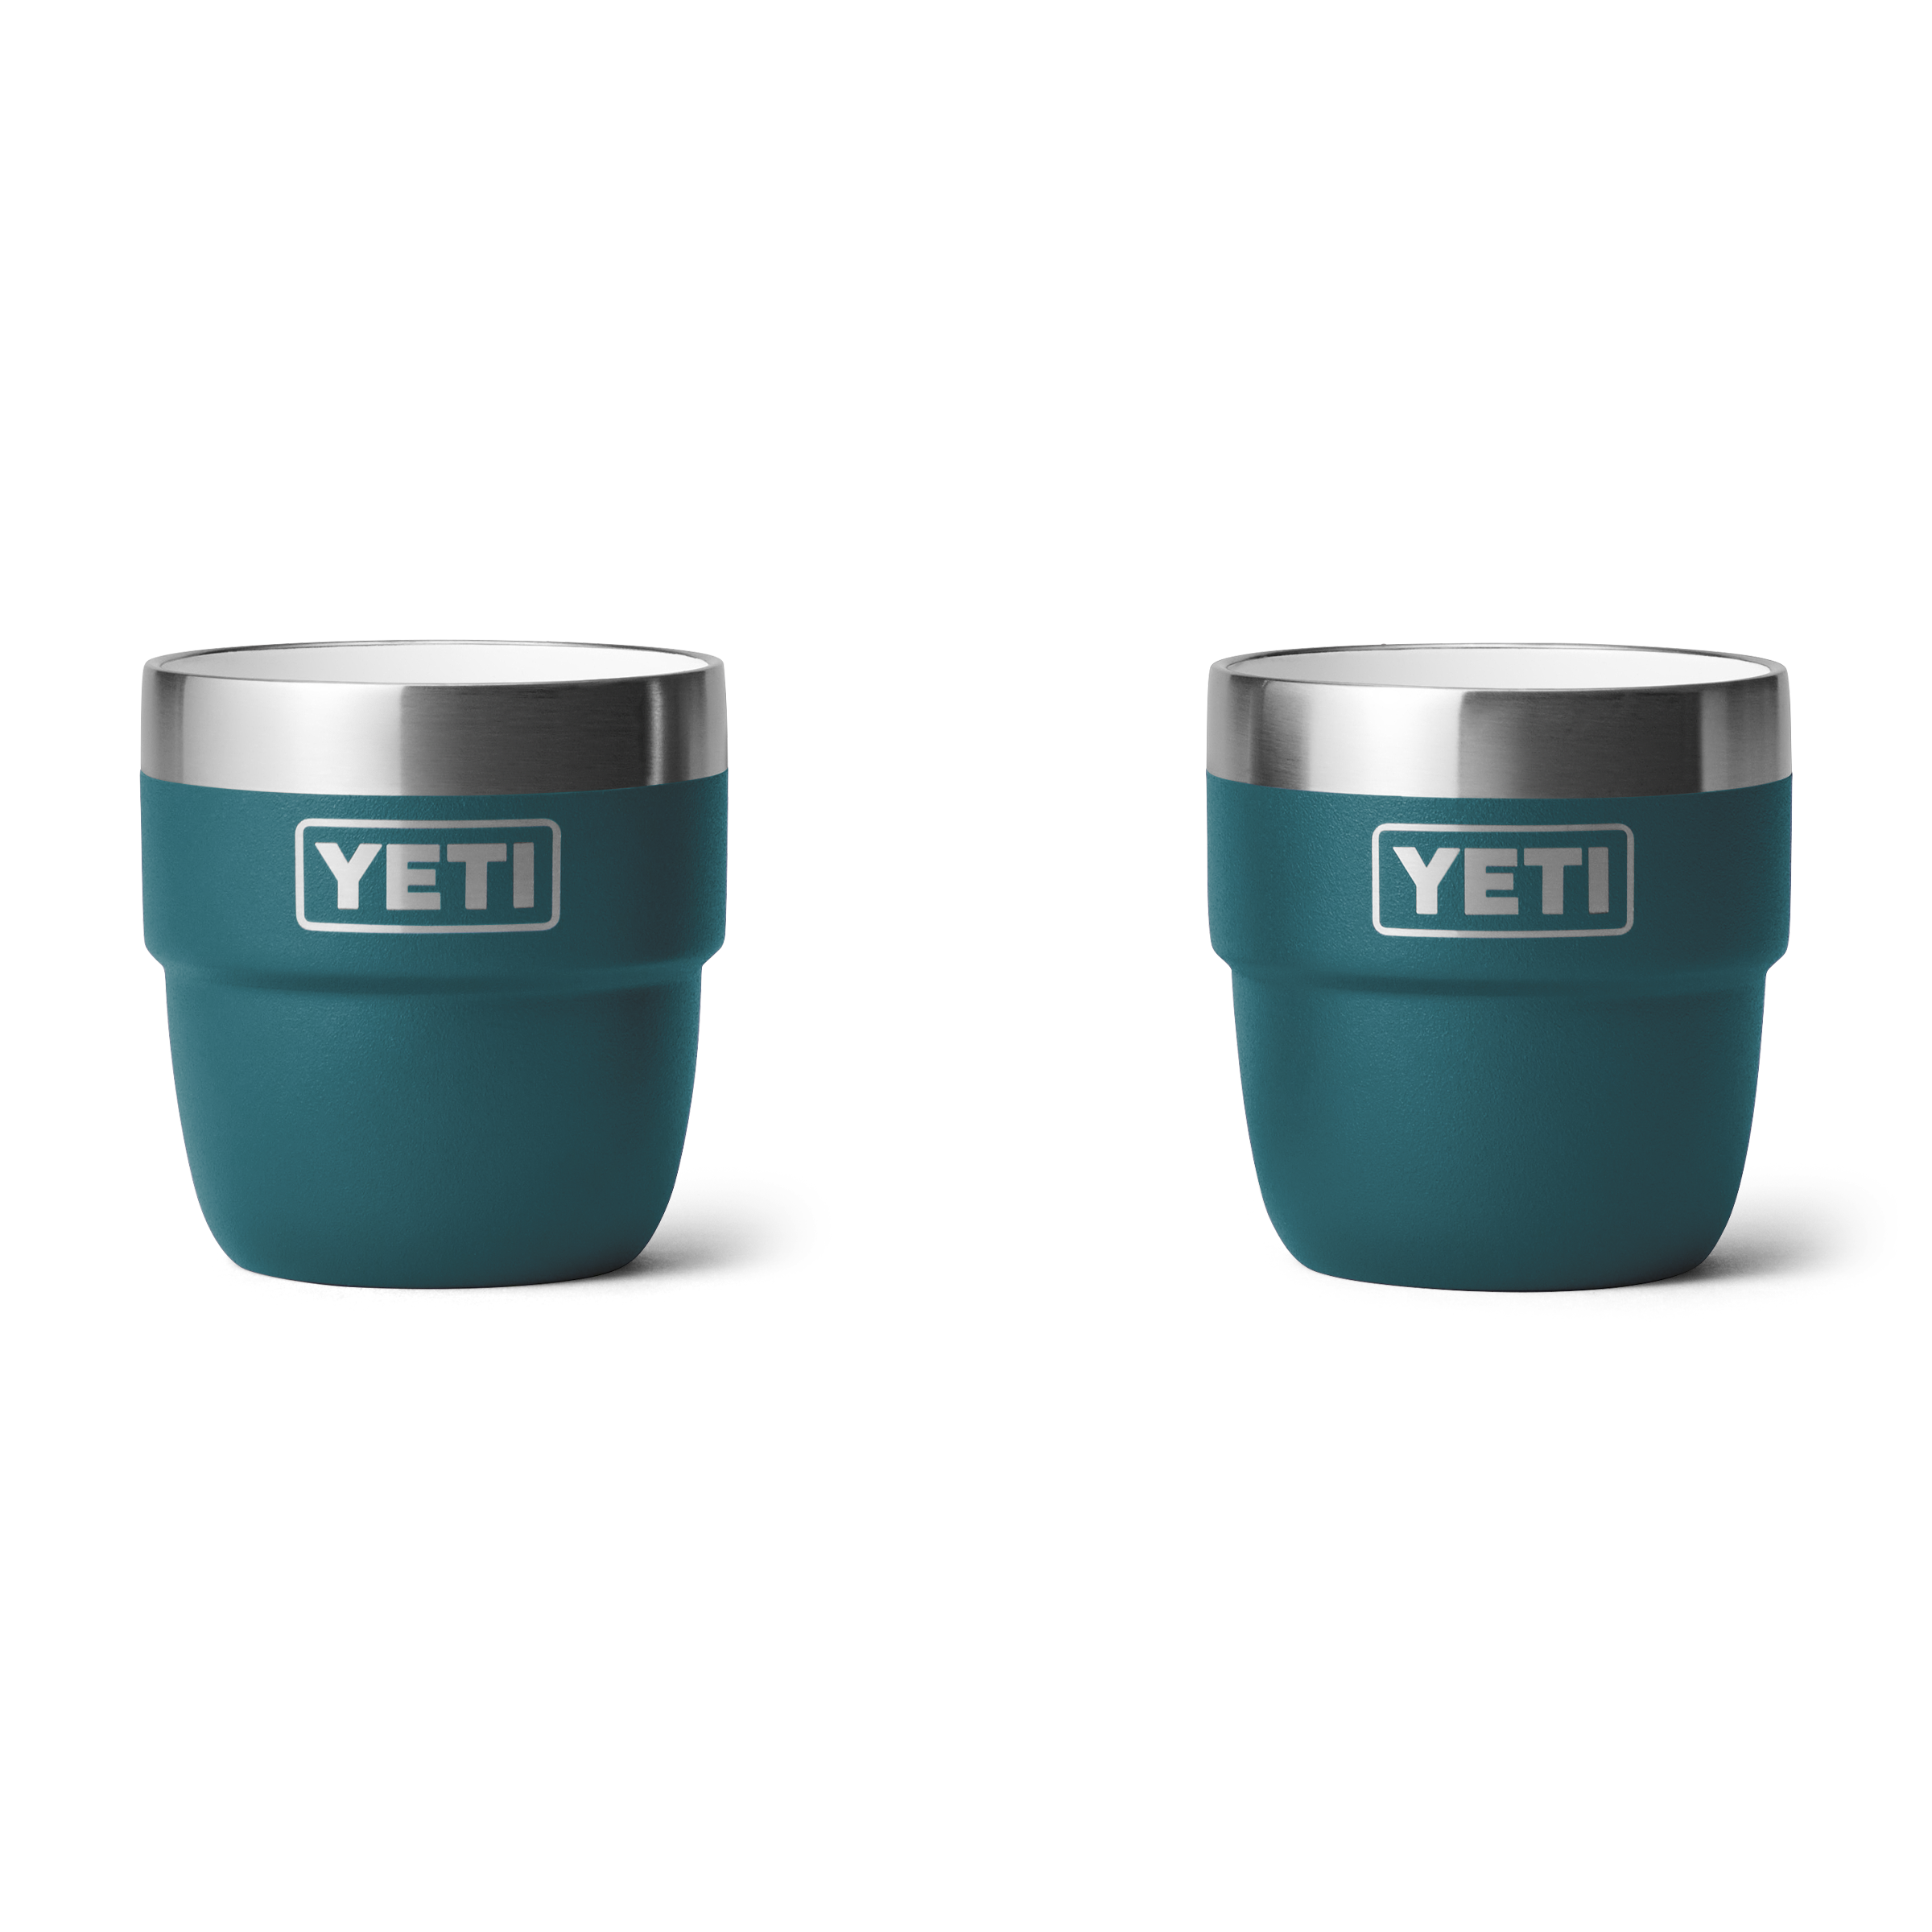 【新品最新品】YETI タンブラー 16oz 4個セット バーベキュー・調理用品